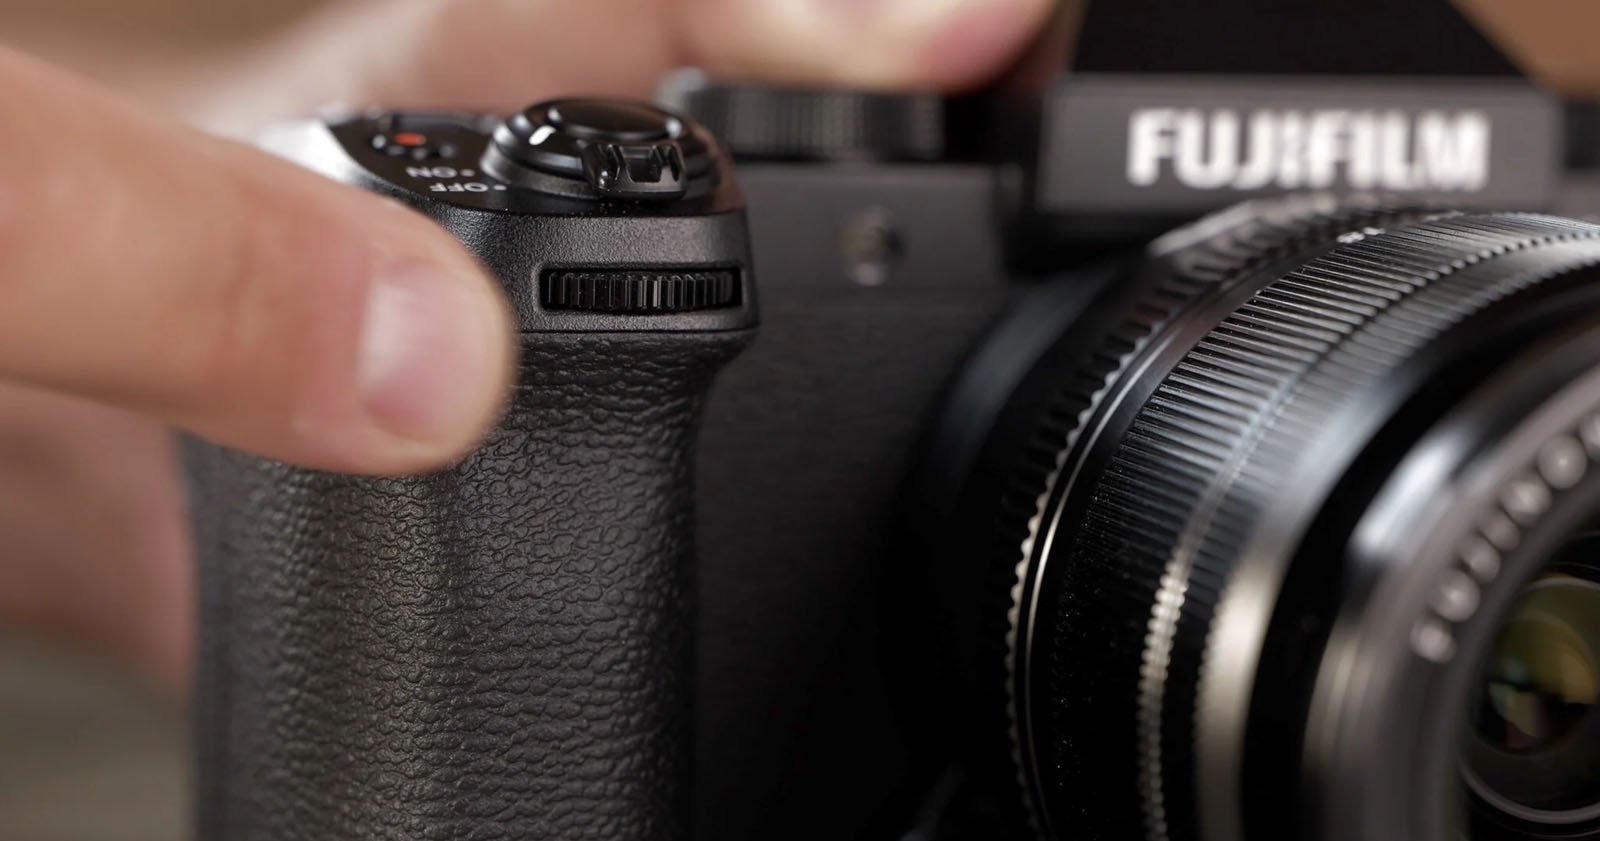 Fujifilm Announces the X-T5 – FUJILOVE MAGAZINE